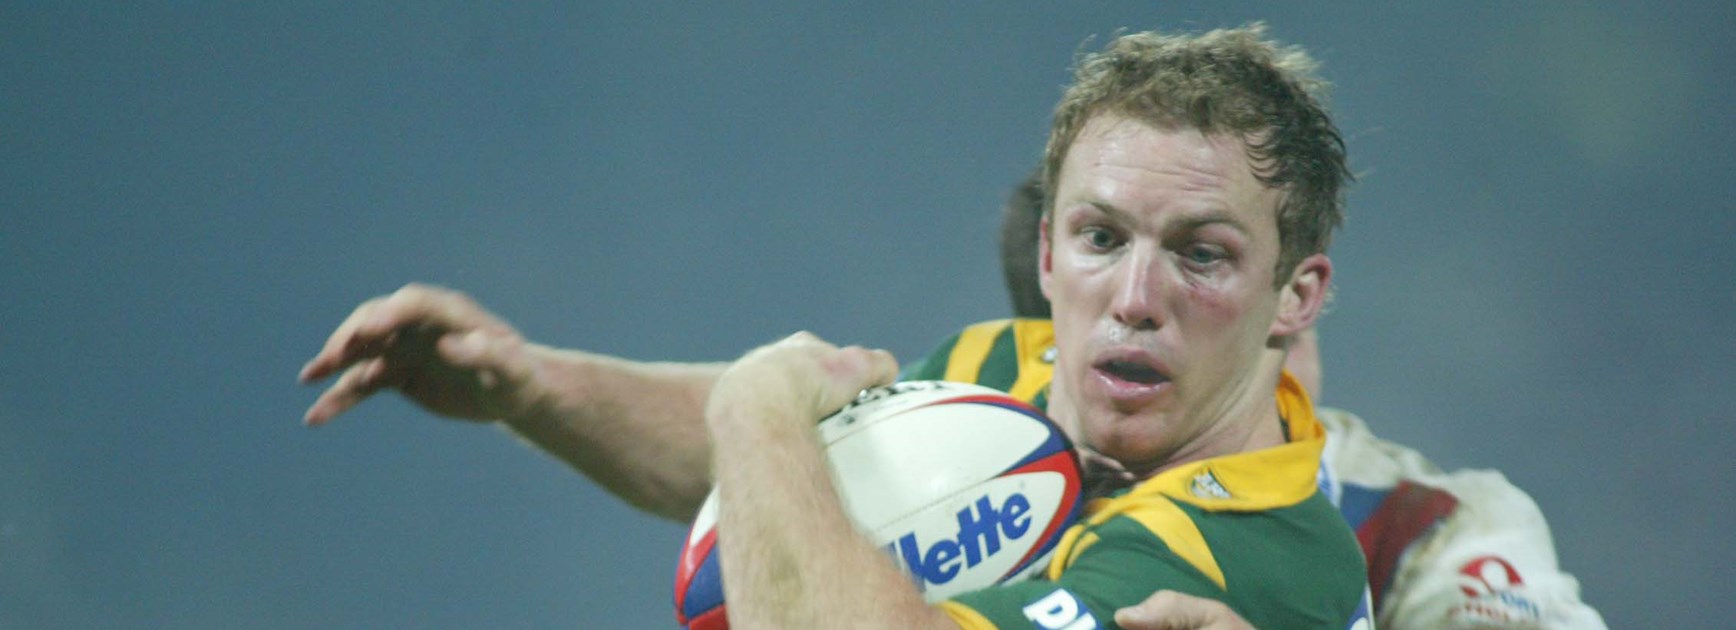 Darren Lockyer playing for fullback for Australia in 2003.